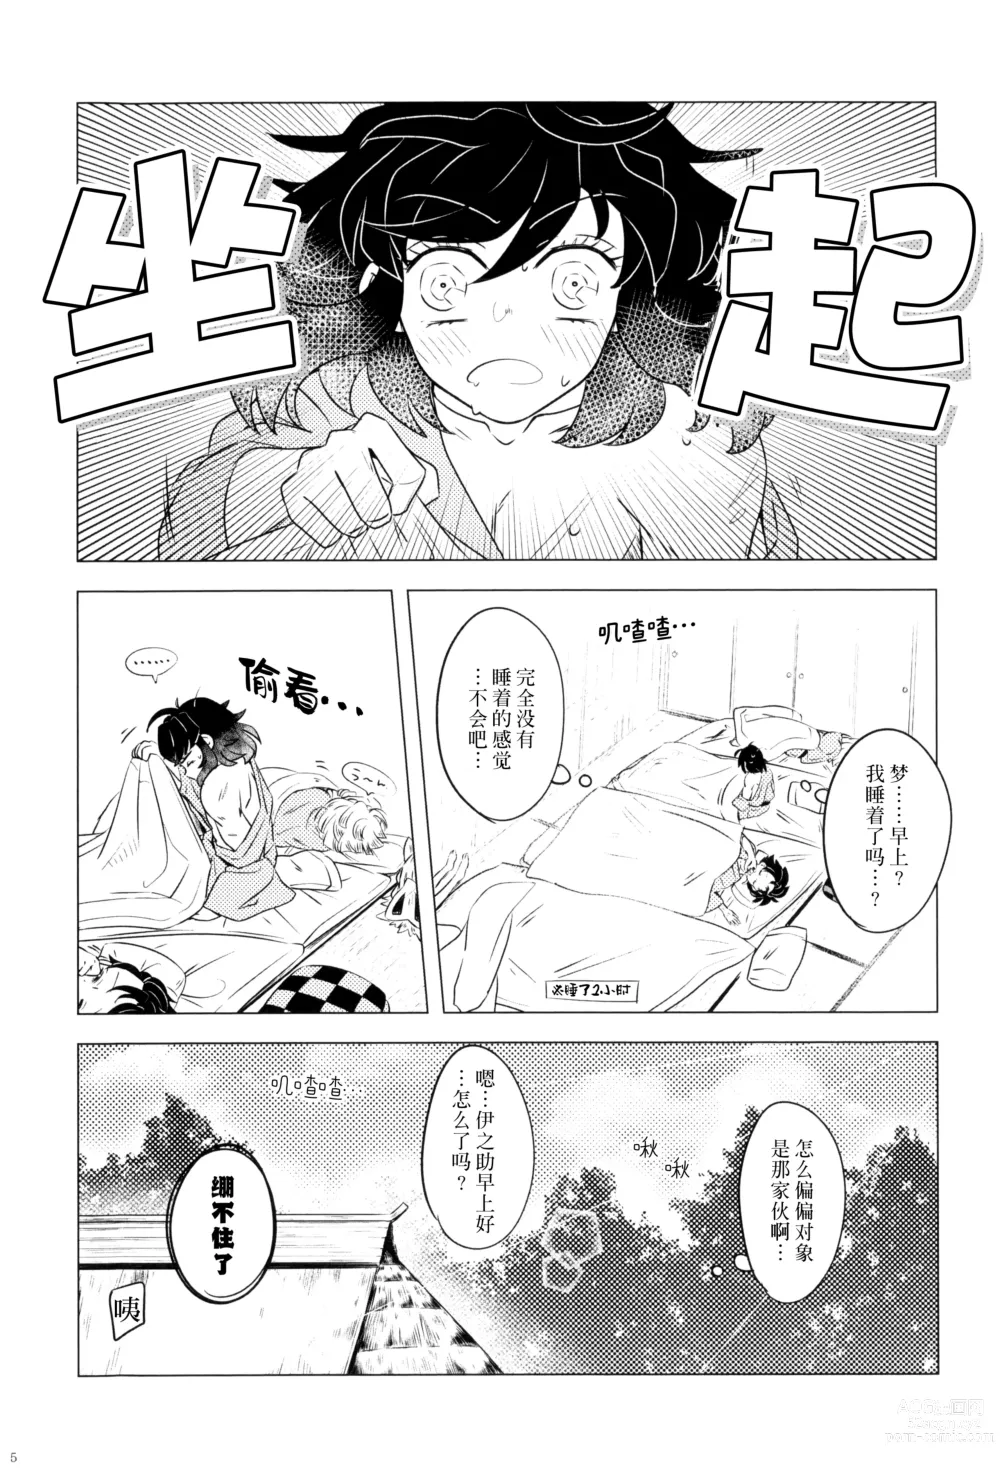 Page 7 of doujinshi 风起云涌